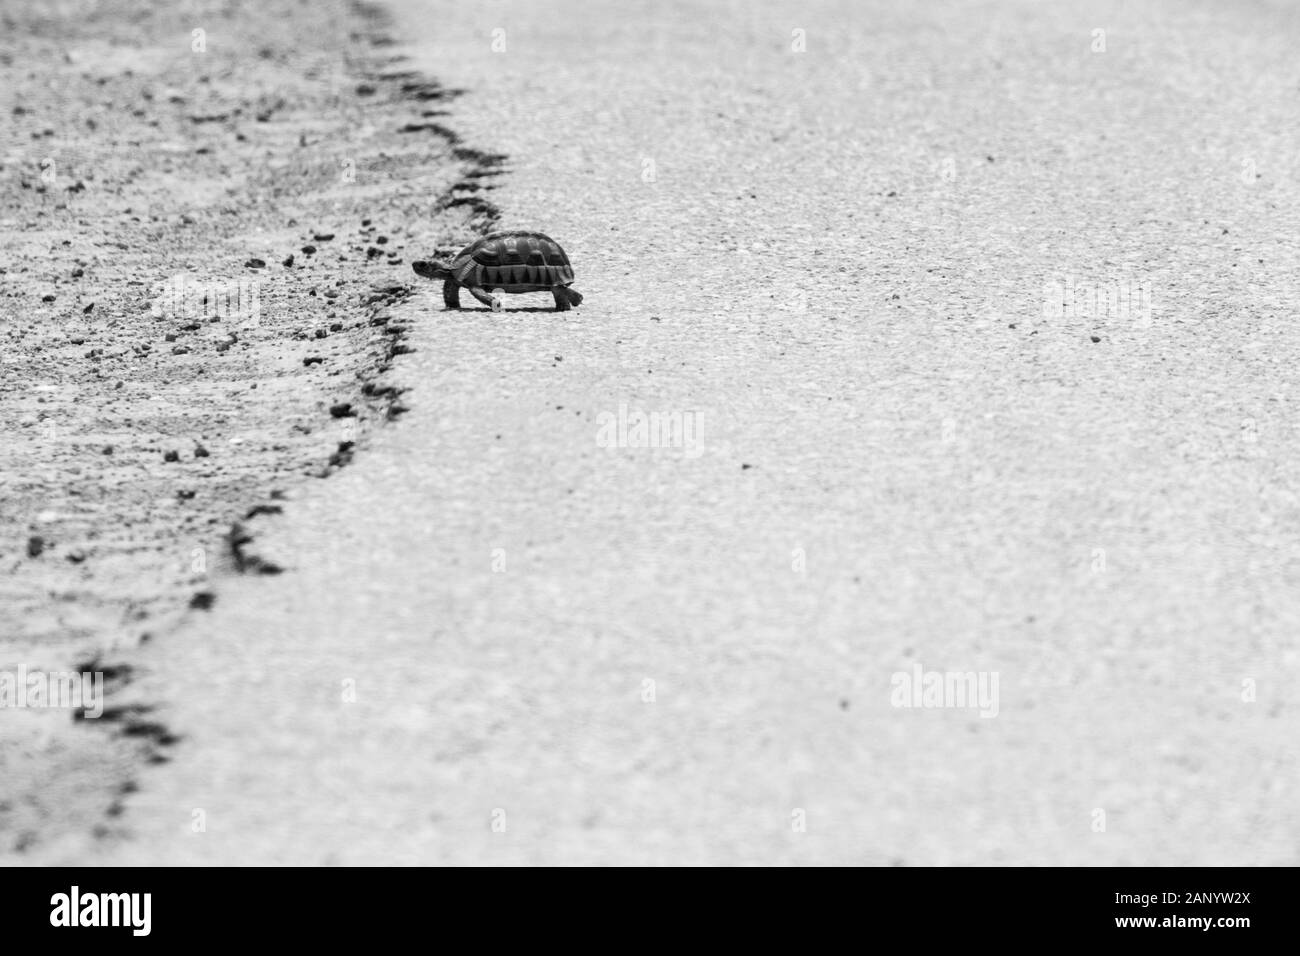 Photo en échelle de gris d'une tortue marchant au chaud asphalte d'une route Banque D'Images